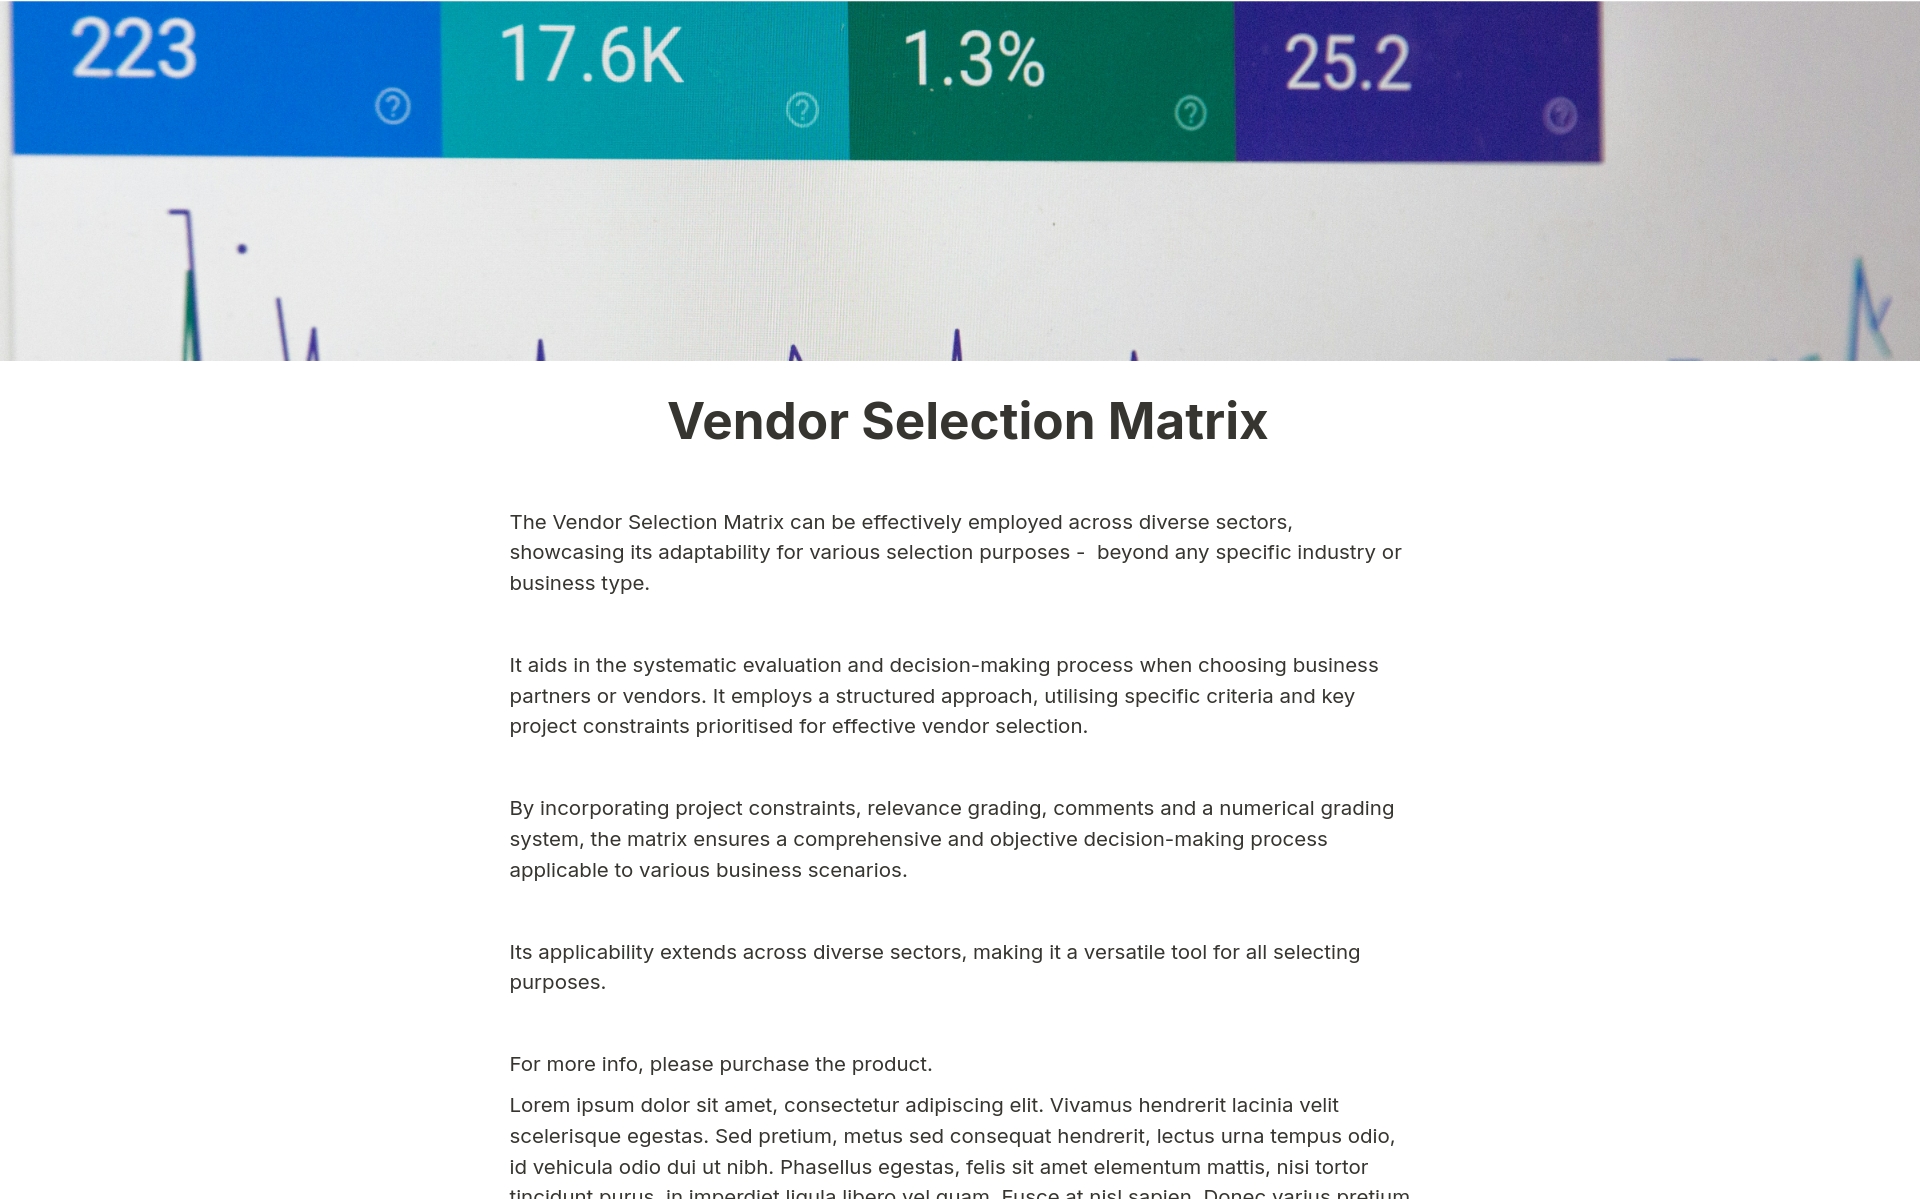 Vista previa de una plantilla para Vendor Selection Matrix